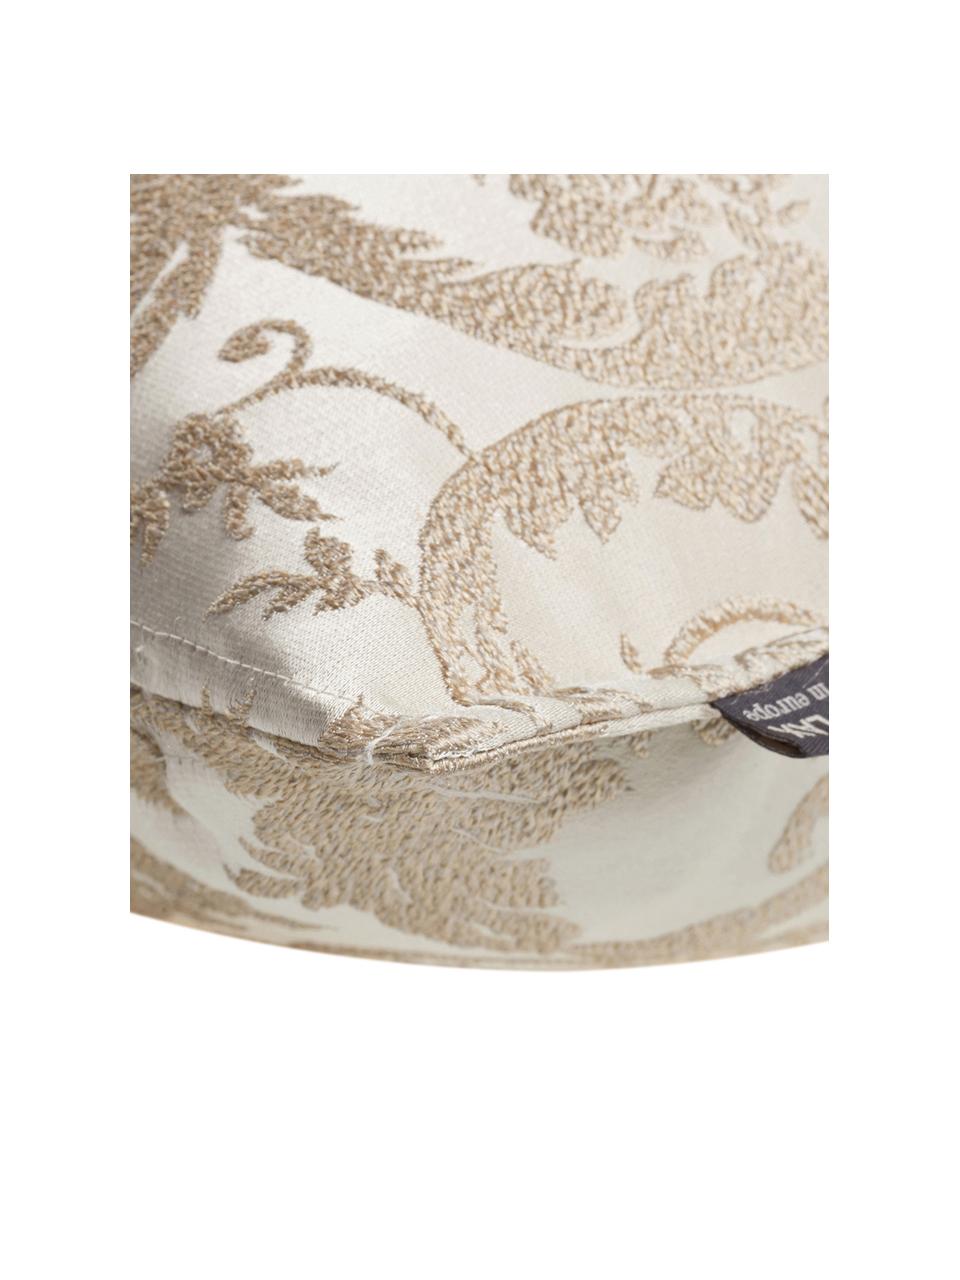 Schimmernde Kissenhülle Astoria mit Ornament-Stickerei, 75% Polyester, 25% Baumwolle, Beige, B 40 x L 40 cm